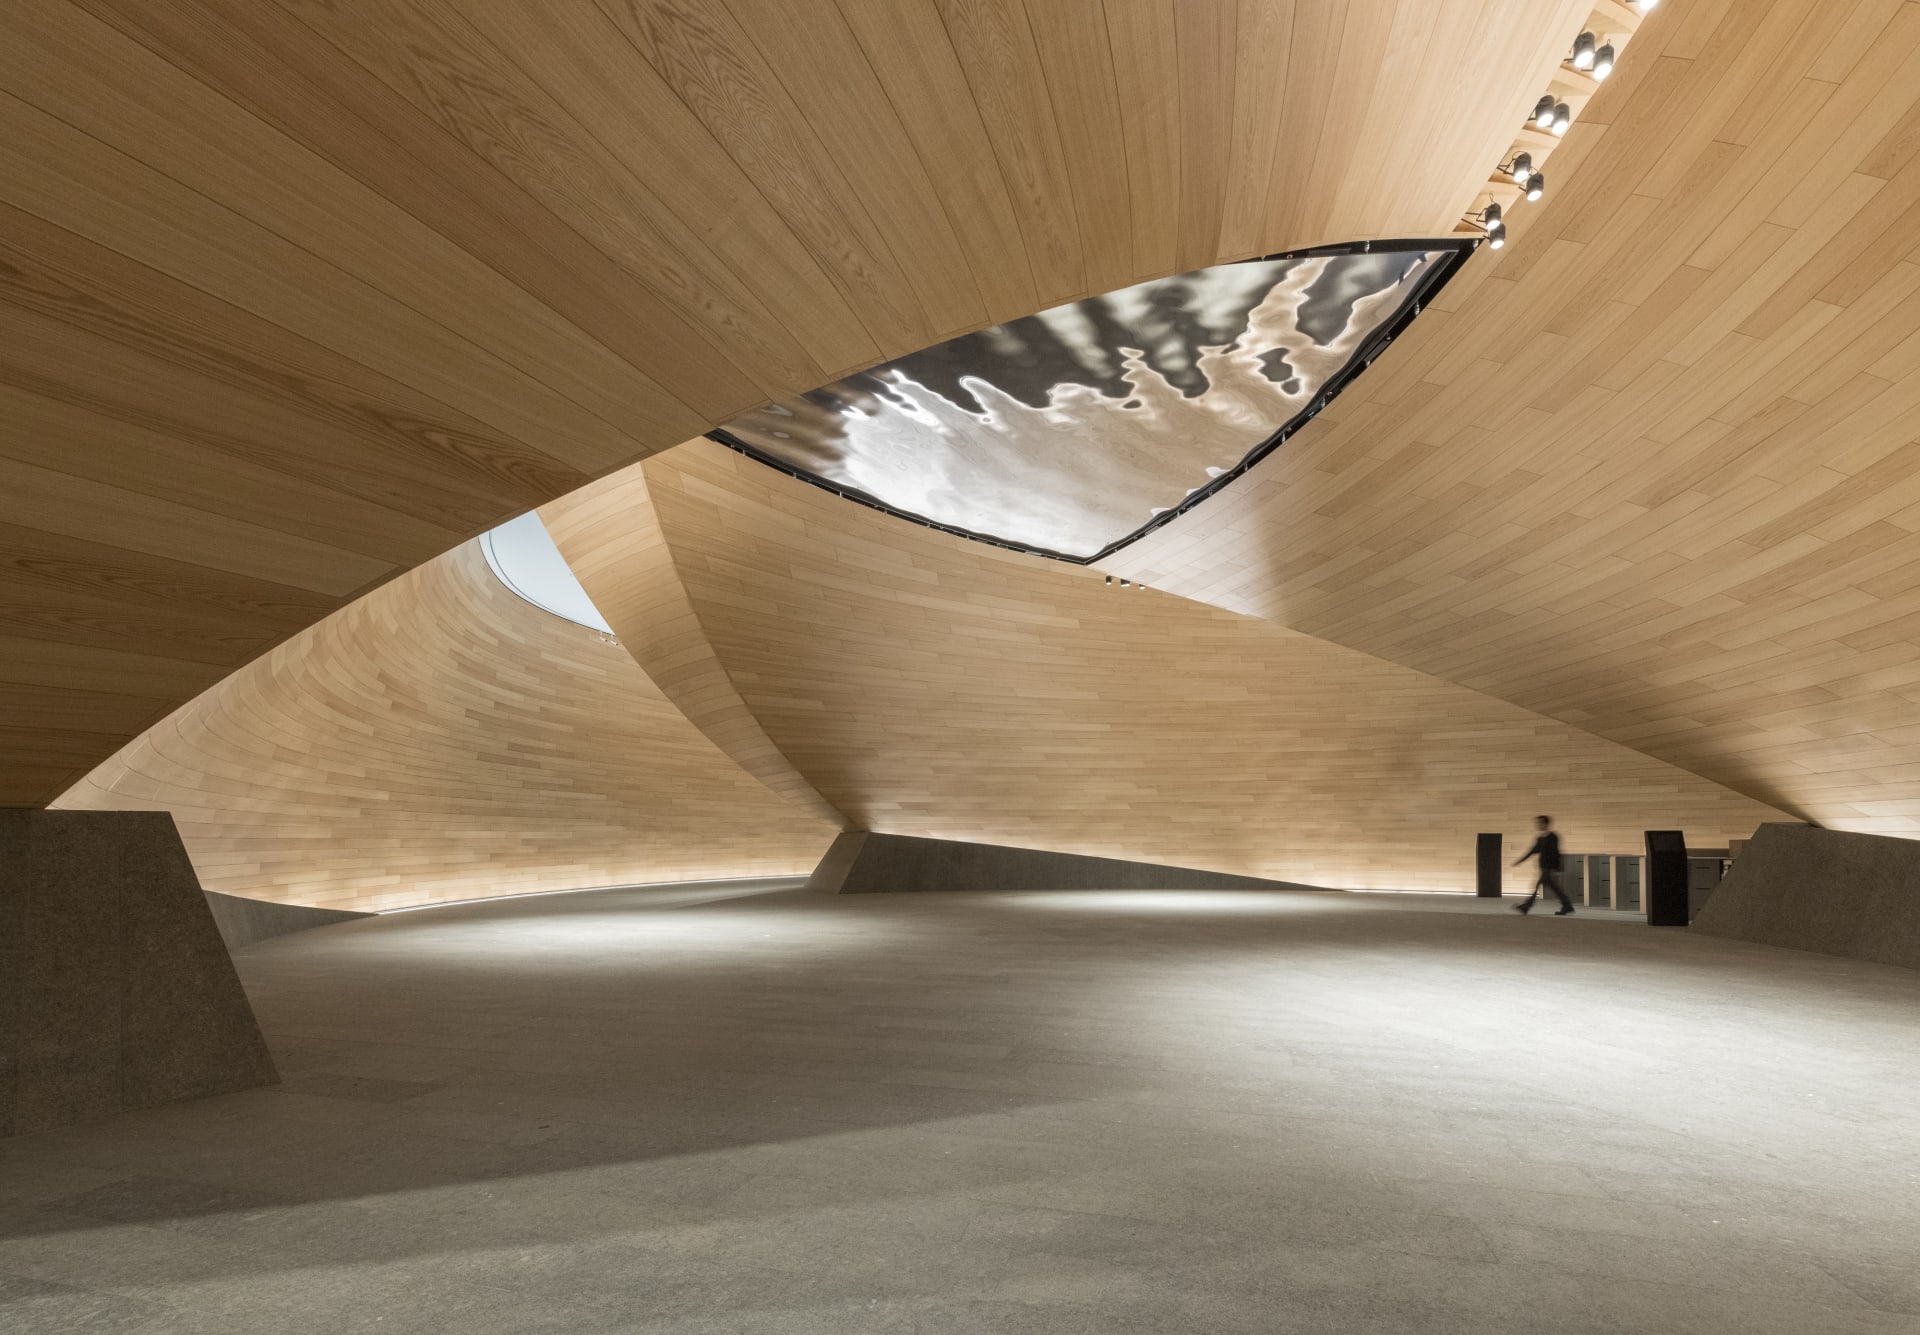 مقر "بلومبرغ" الأوروبي يفوز بأرقى جائزة معمارية في المملكة المتحدة